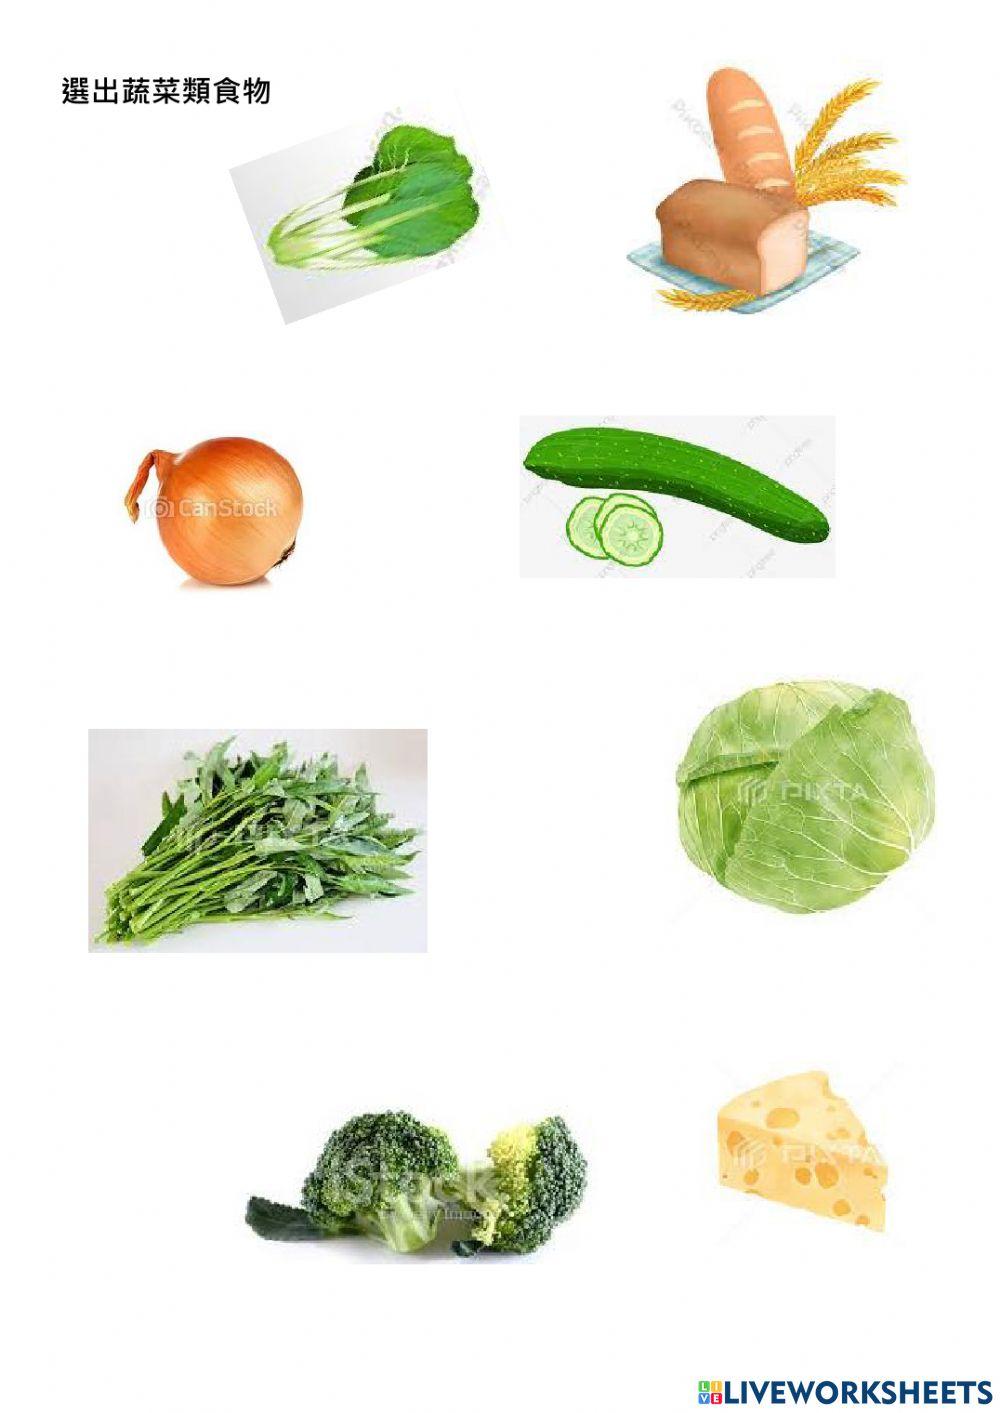 蔬菜類食物